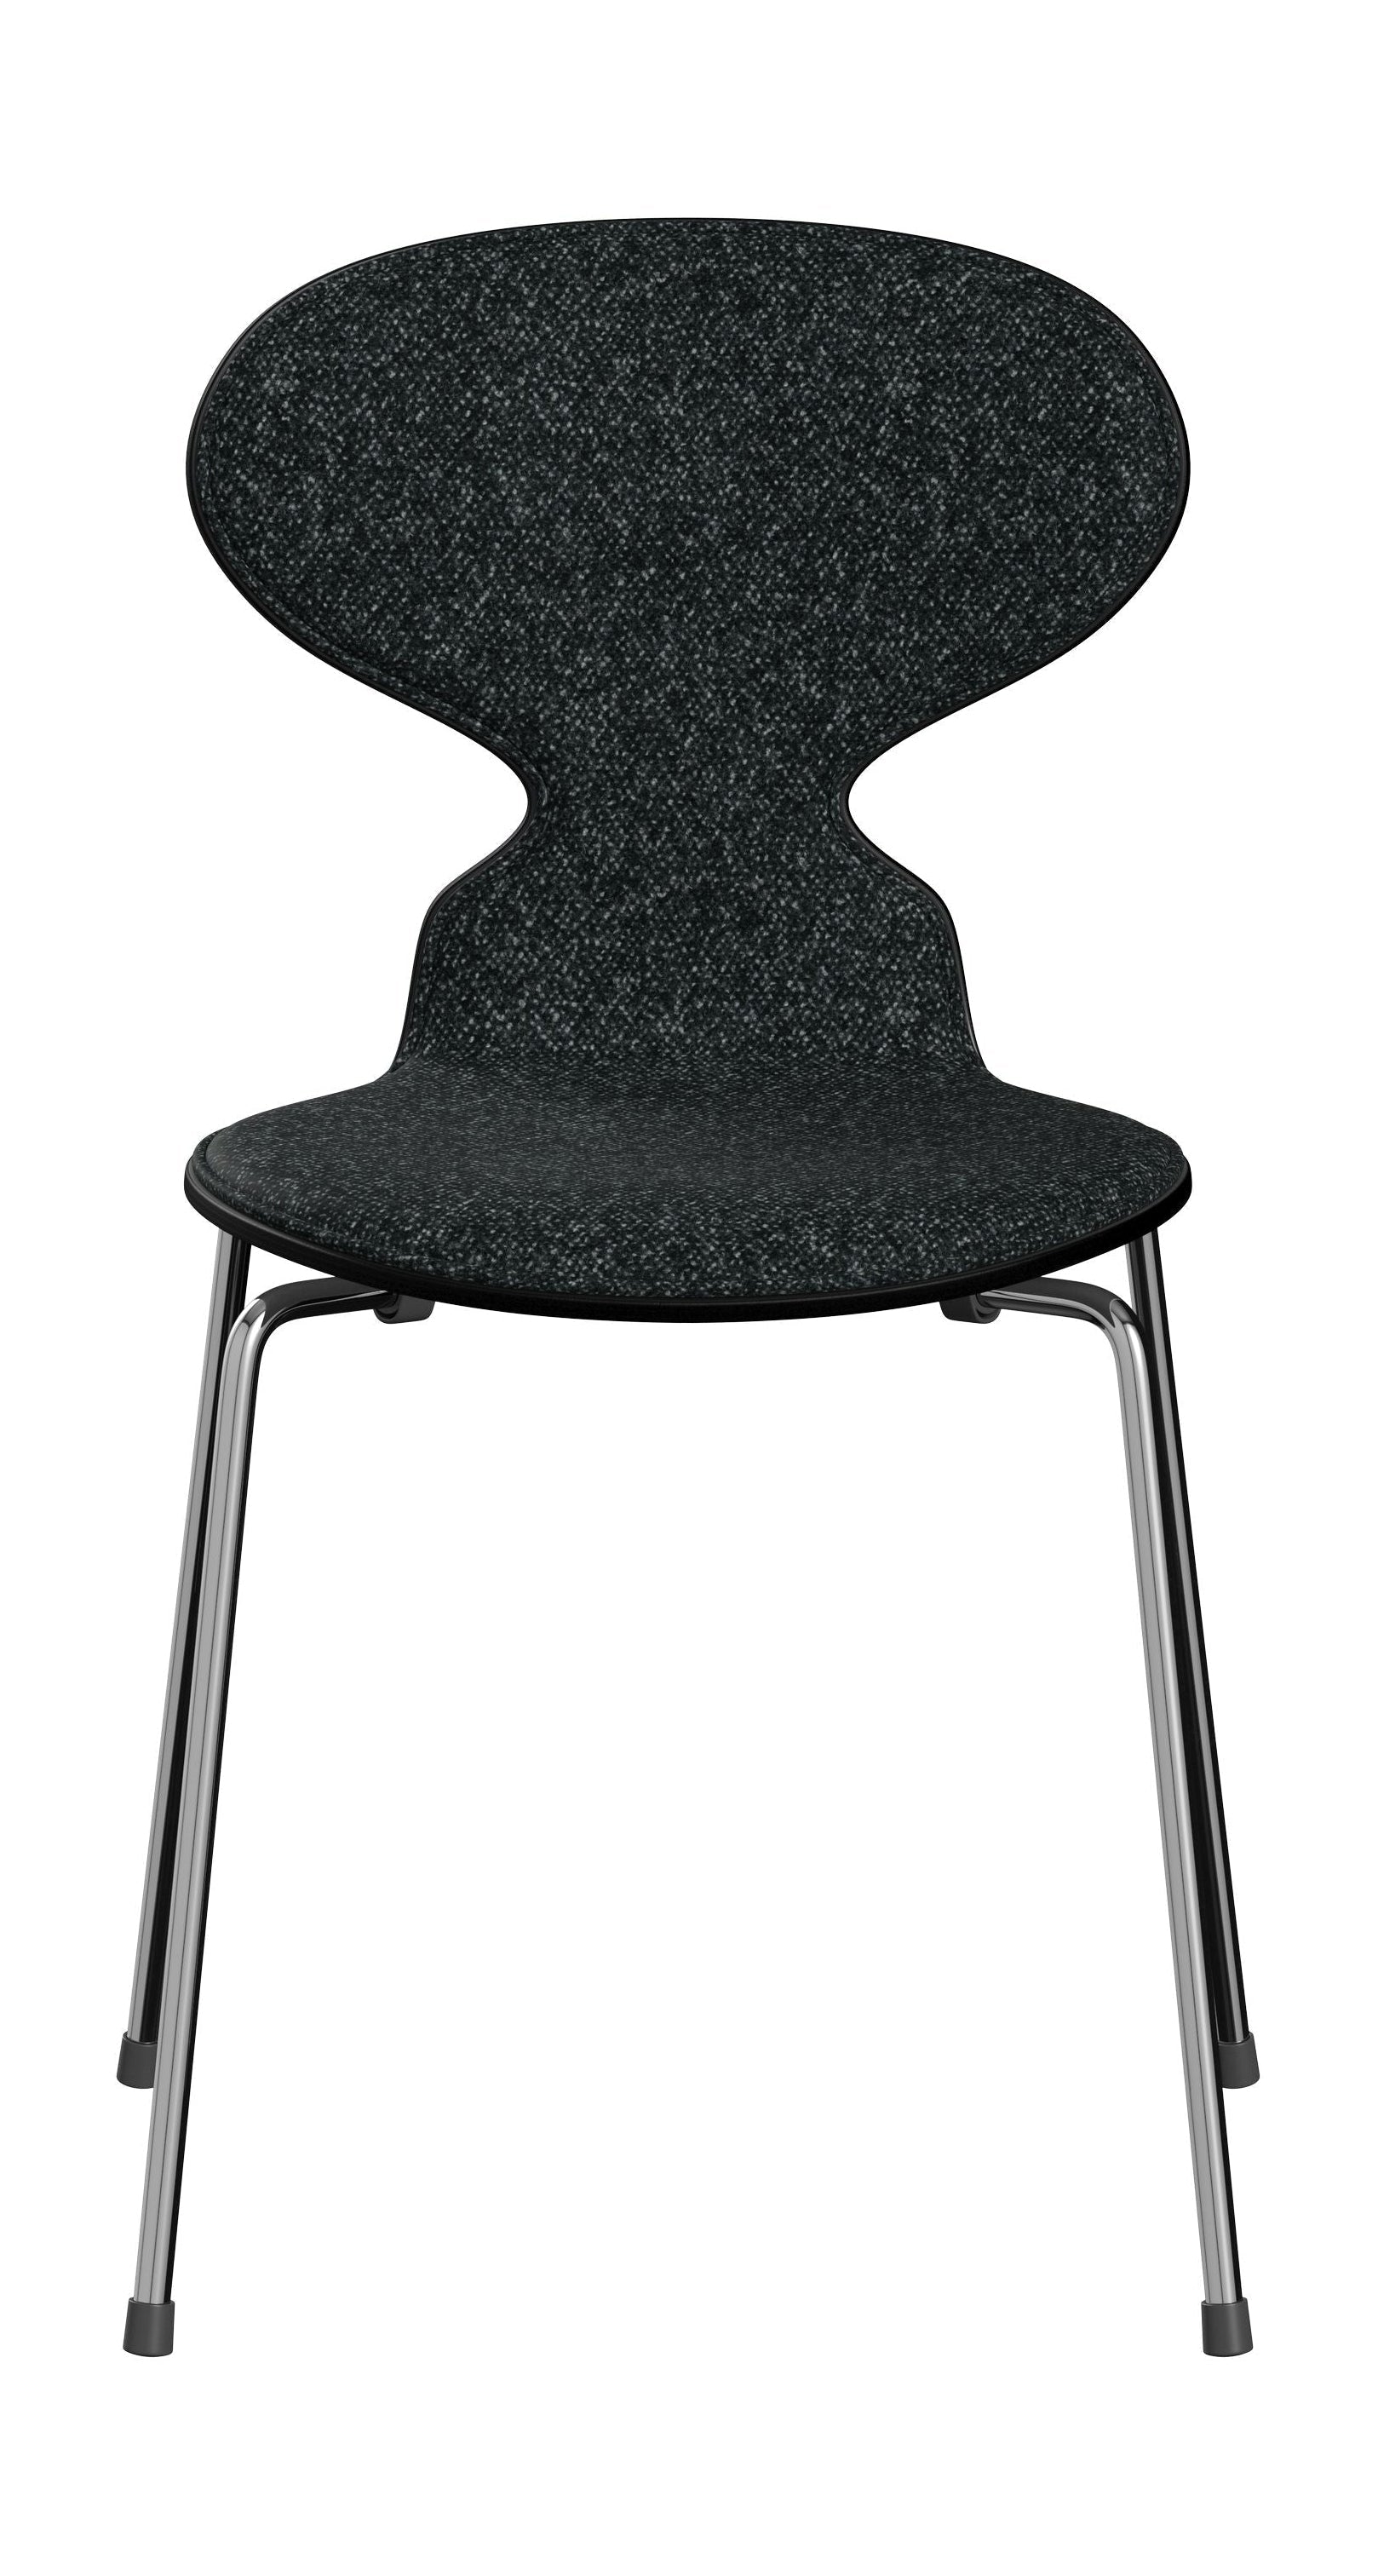 Fritz Hansen 3101 Ant Chair Front Upholstered, Shell: Colored Veneer Black, Upholstery: Vanir Textile Black/Grey, Base: Steel/Chrome